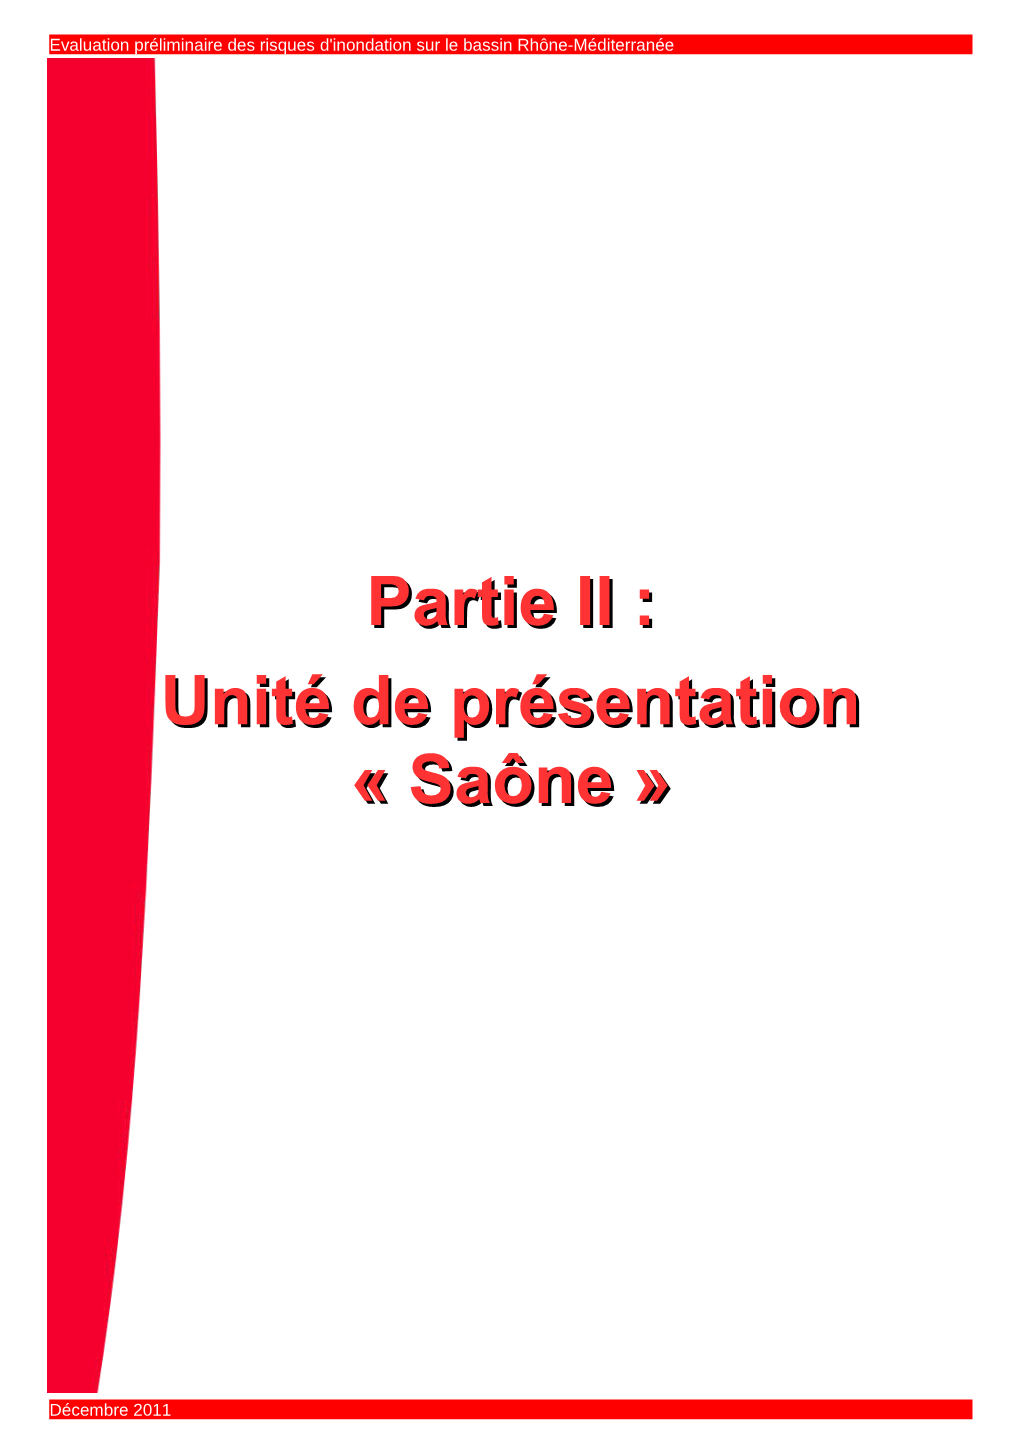 Unité De Présentation Saône